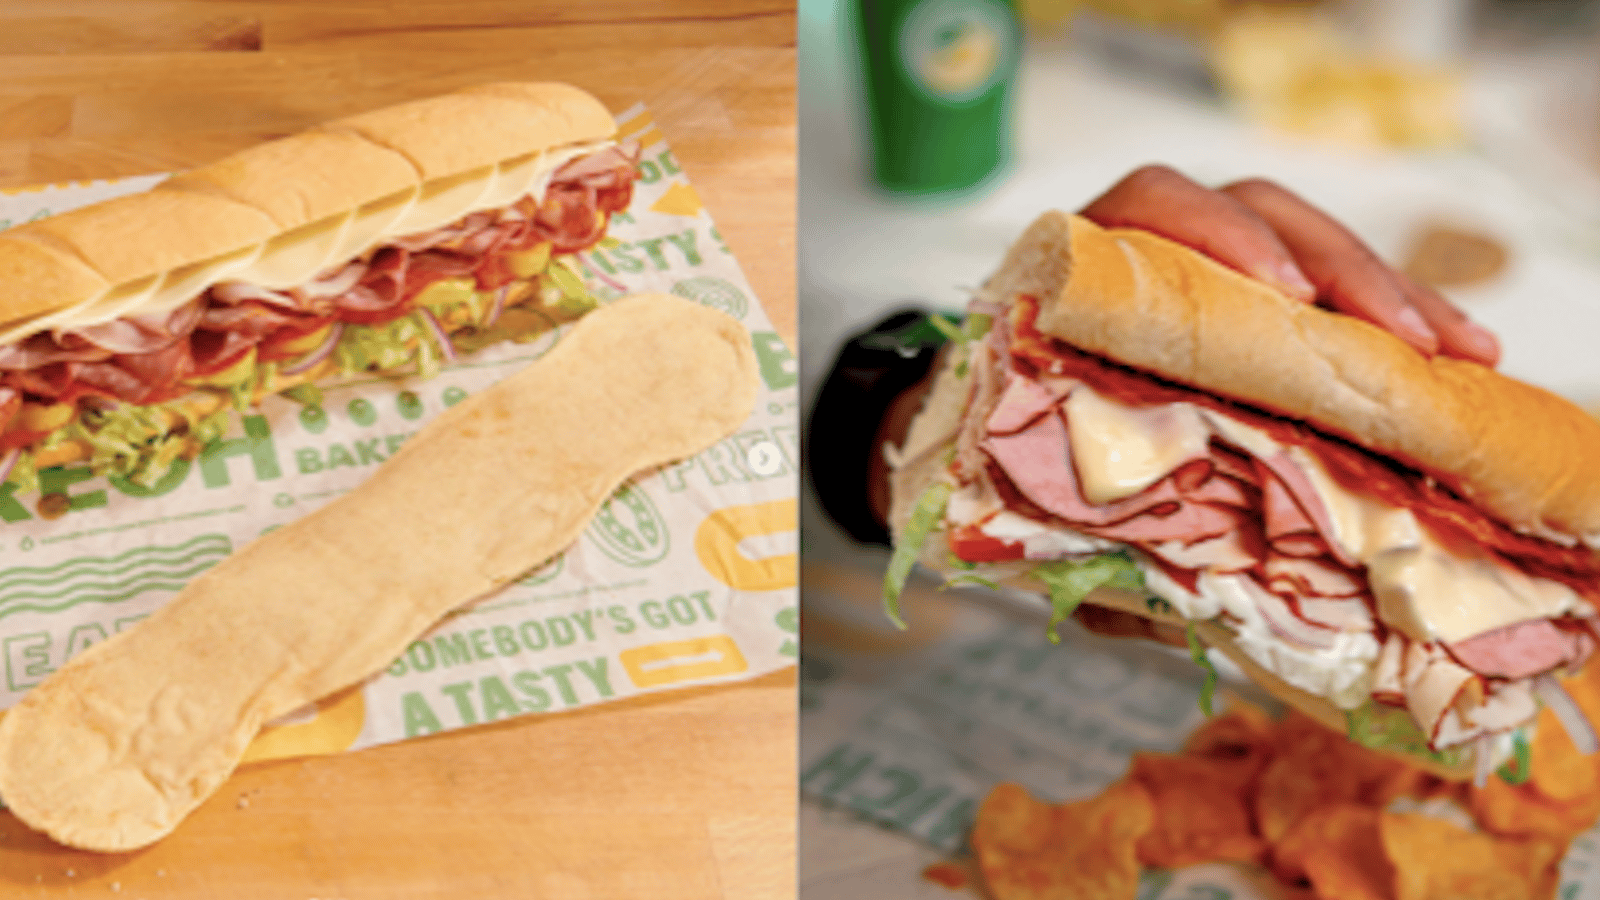 Subway met 14 nouveaux sandwichs à son menu